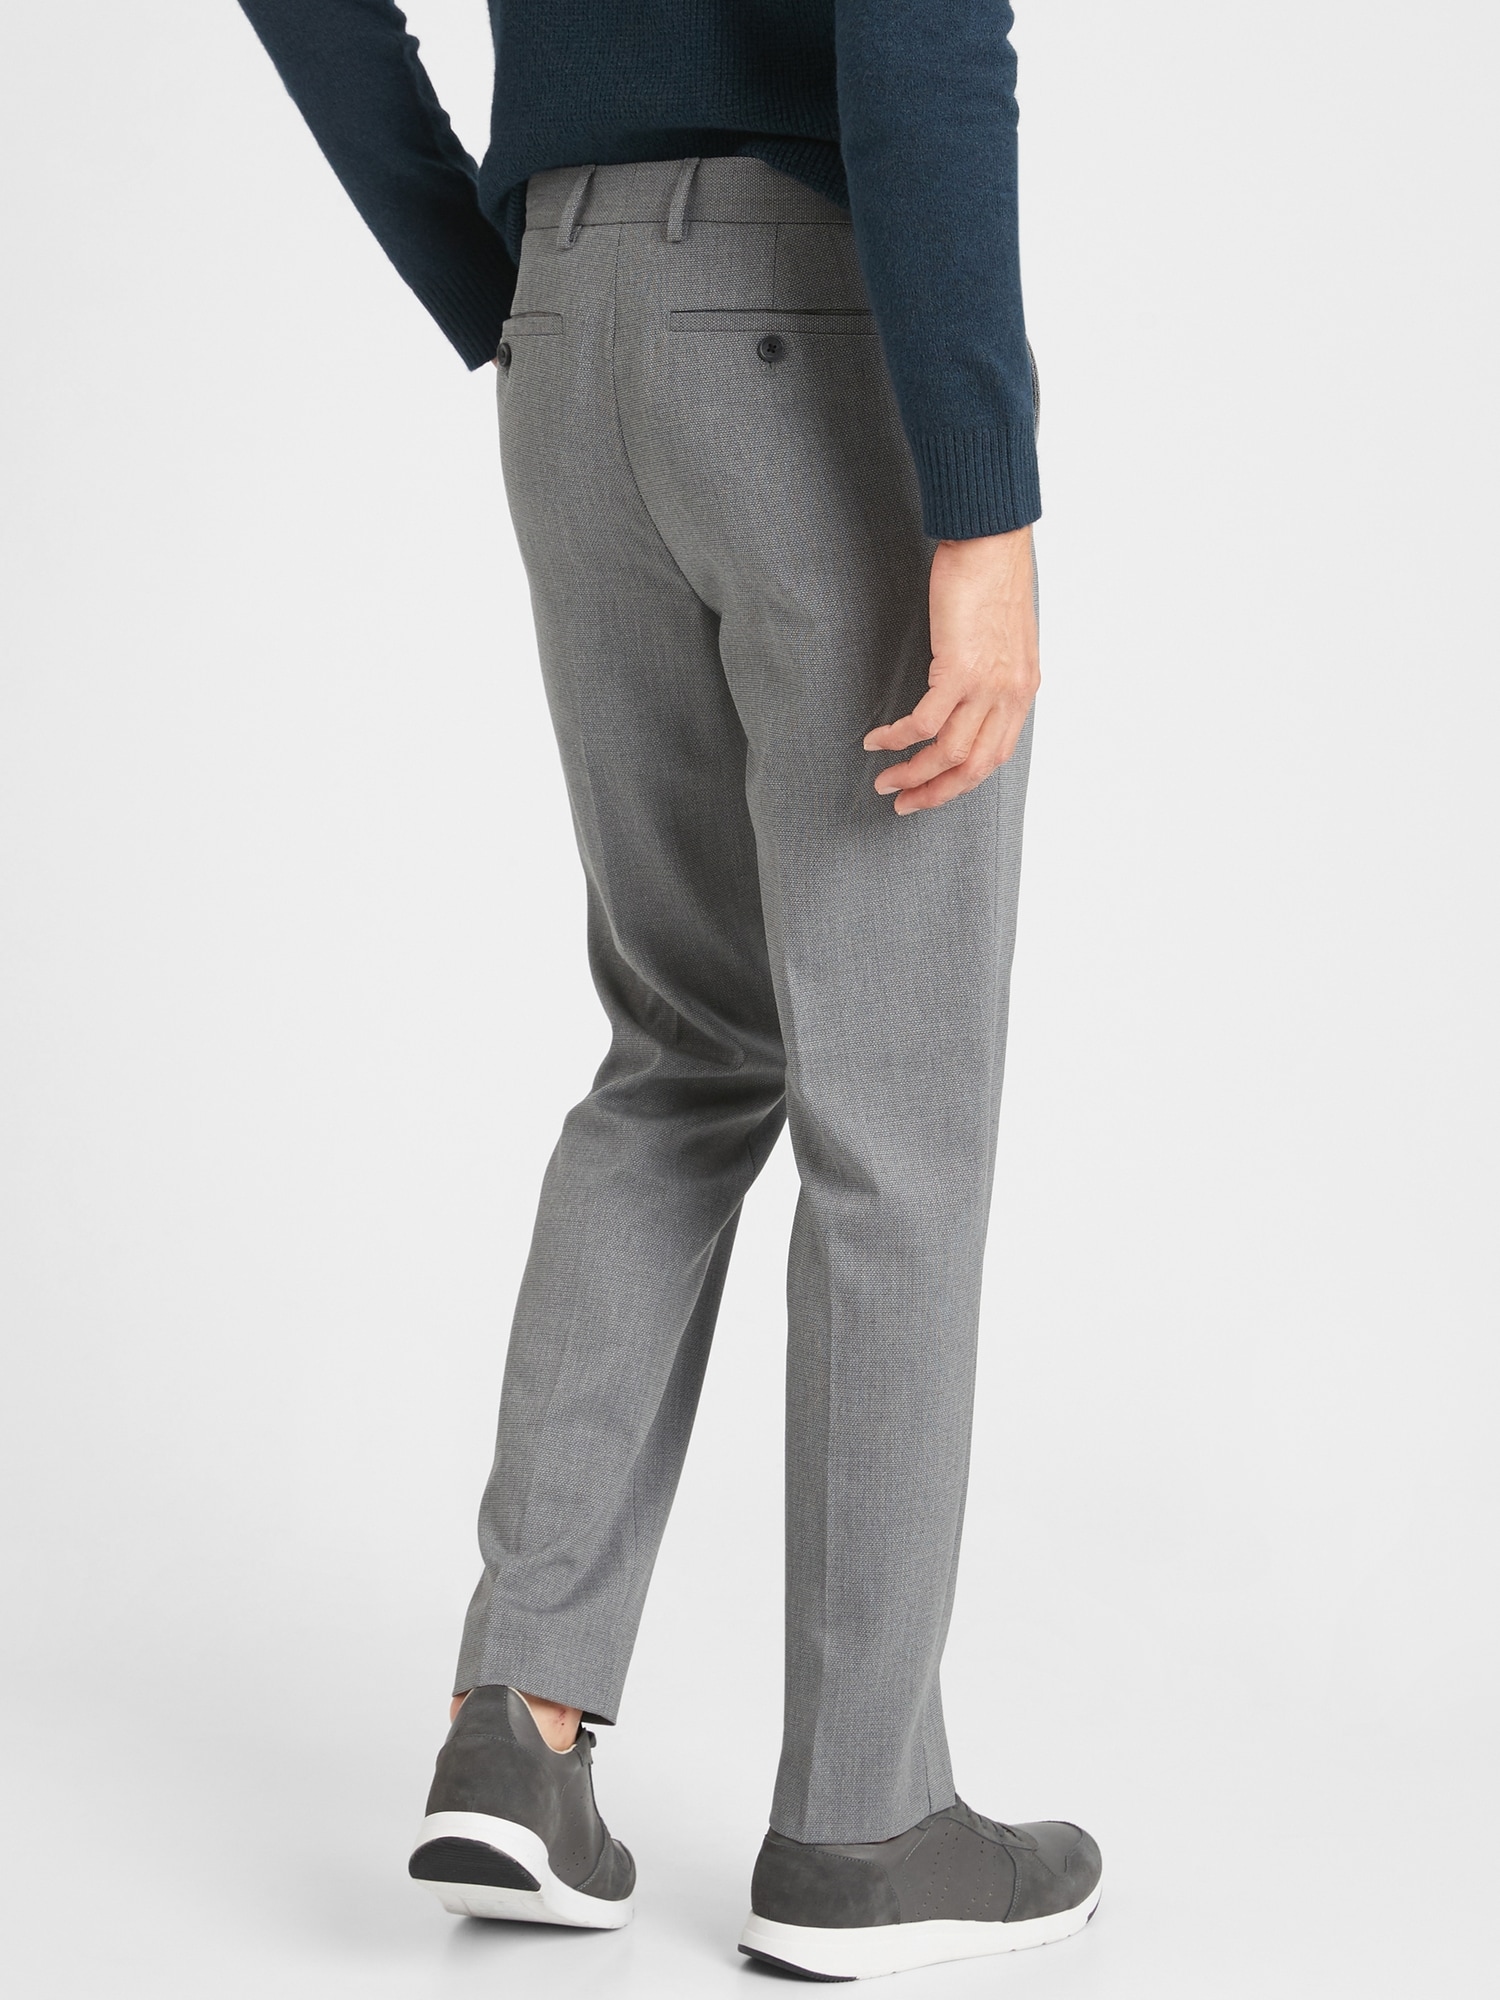 Slim-Fit Wrinkle Resistant Grey Texture Pant